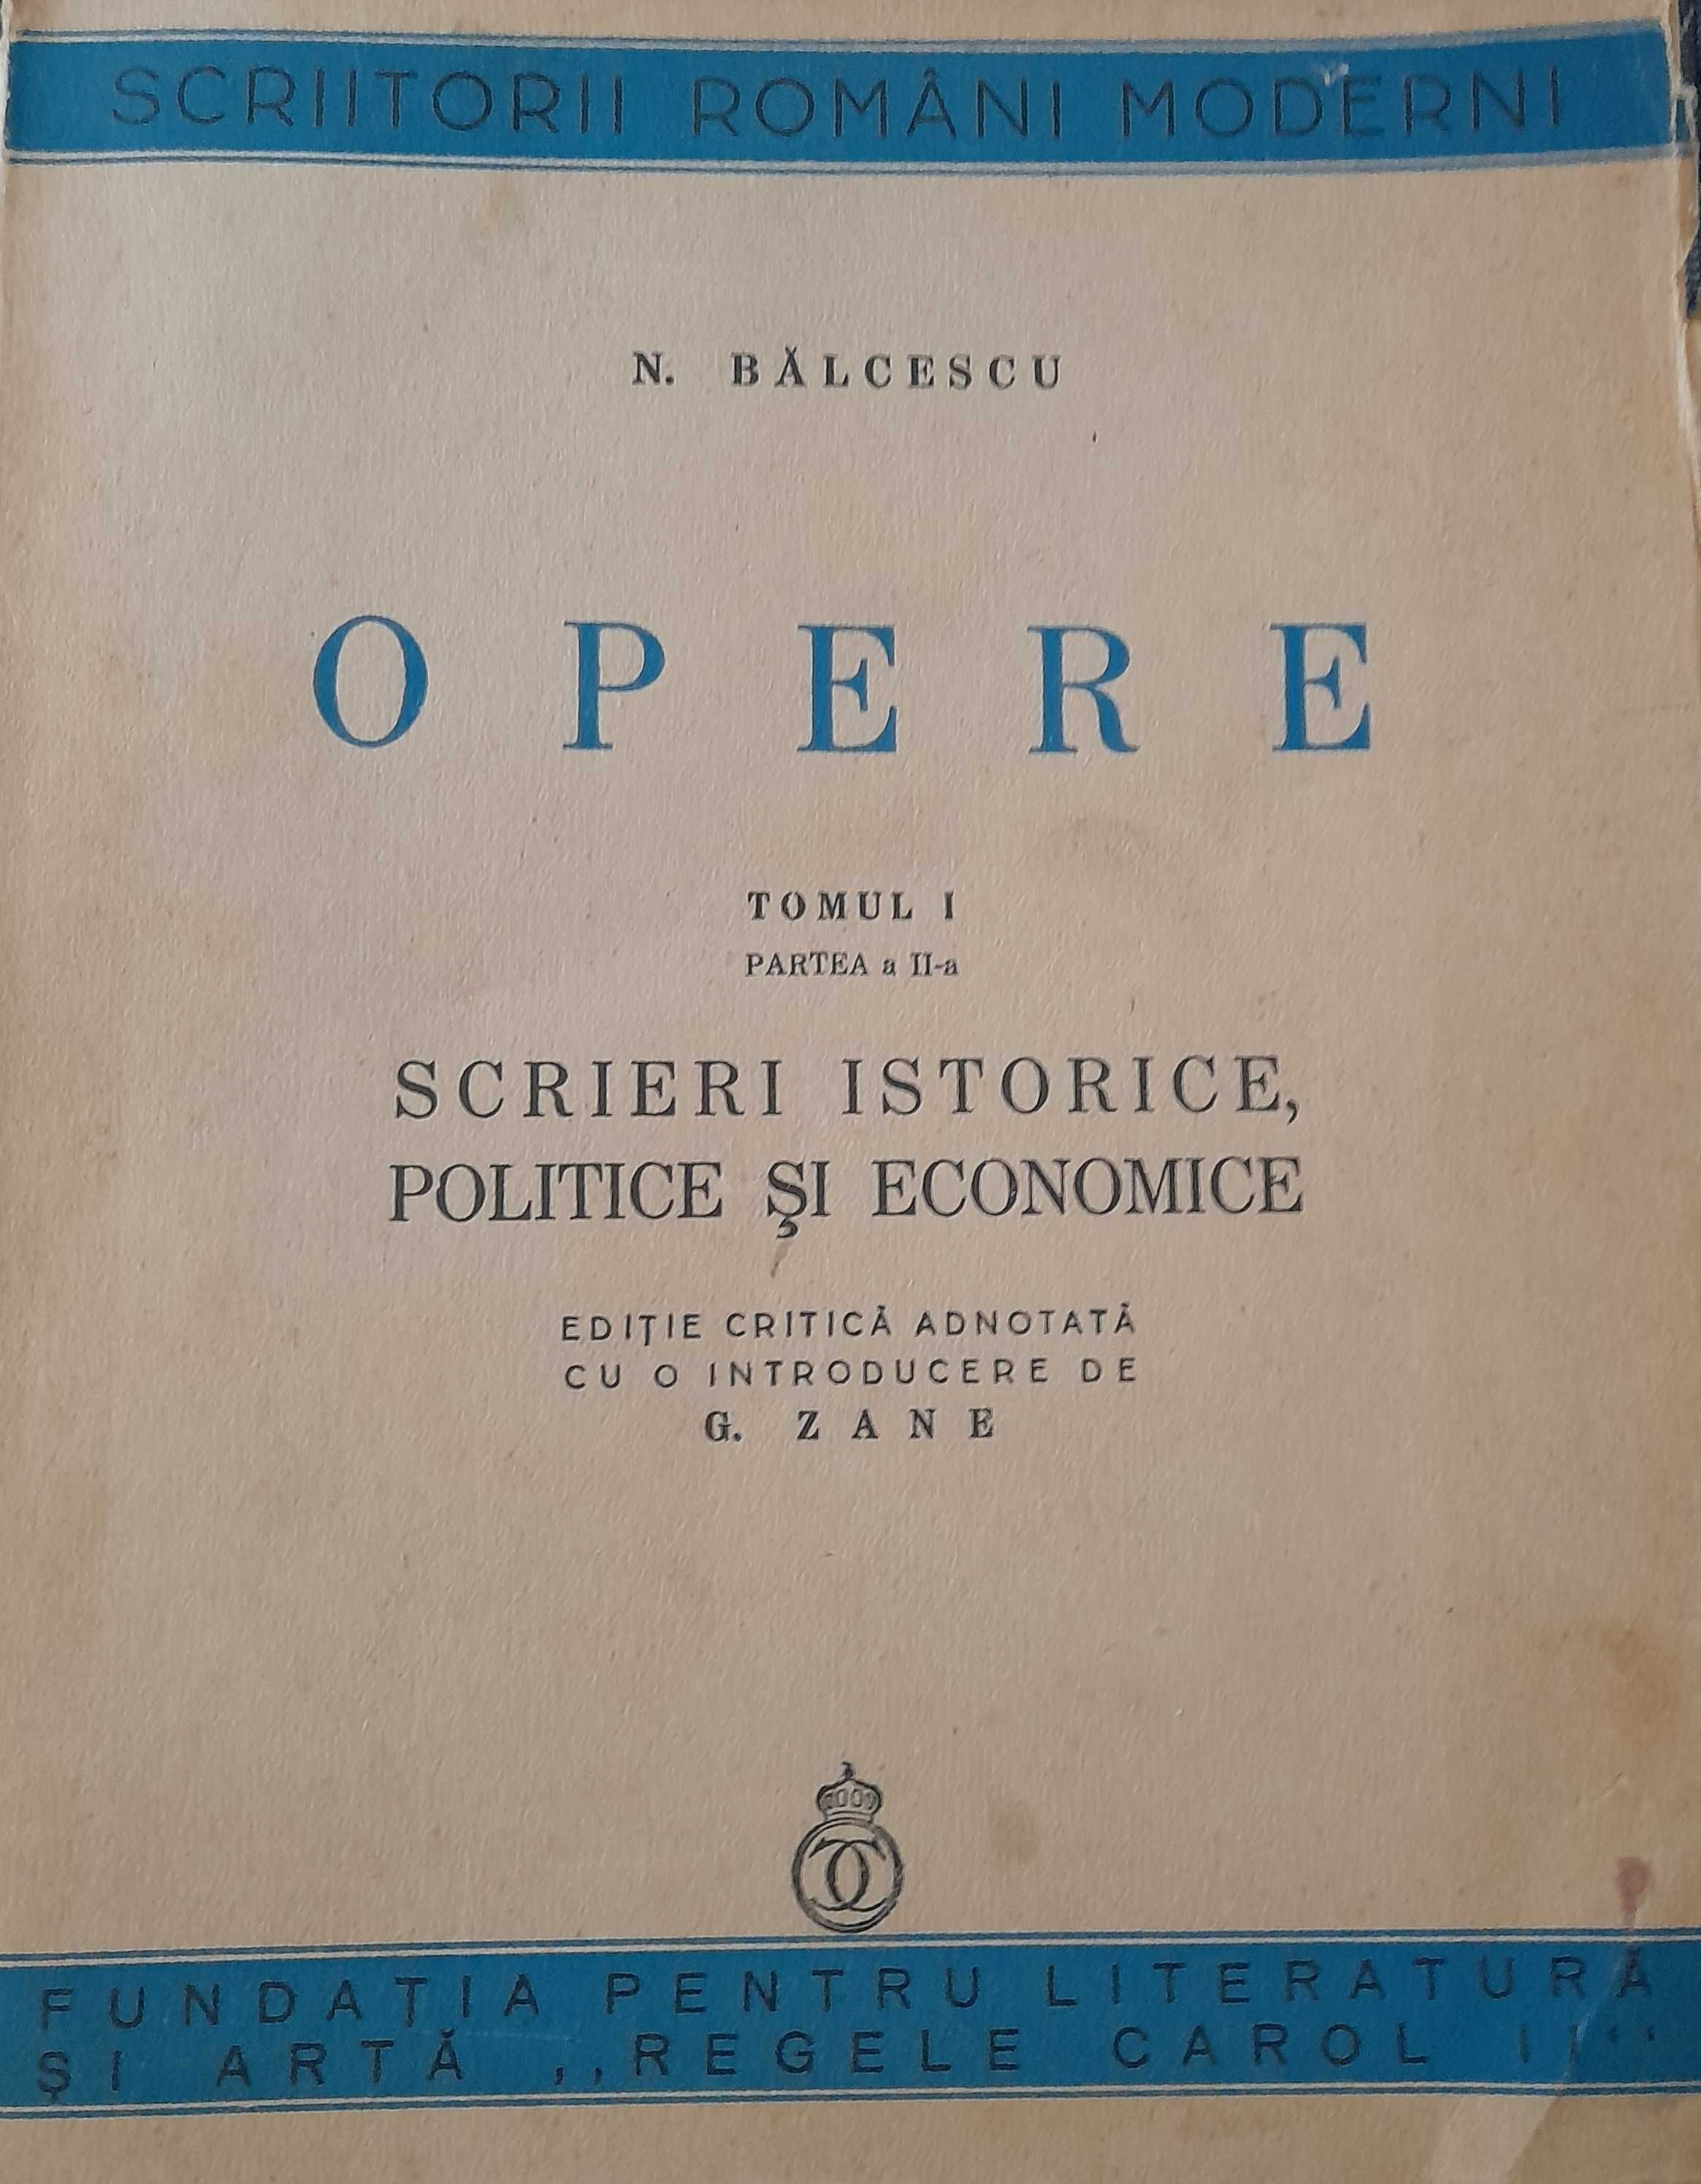 N.Balcescu - Opere vol.1 parteaI si partea II 1940